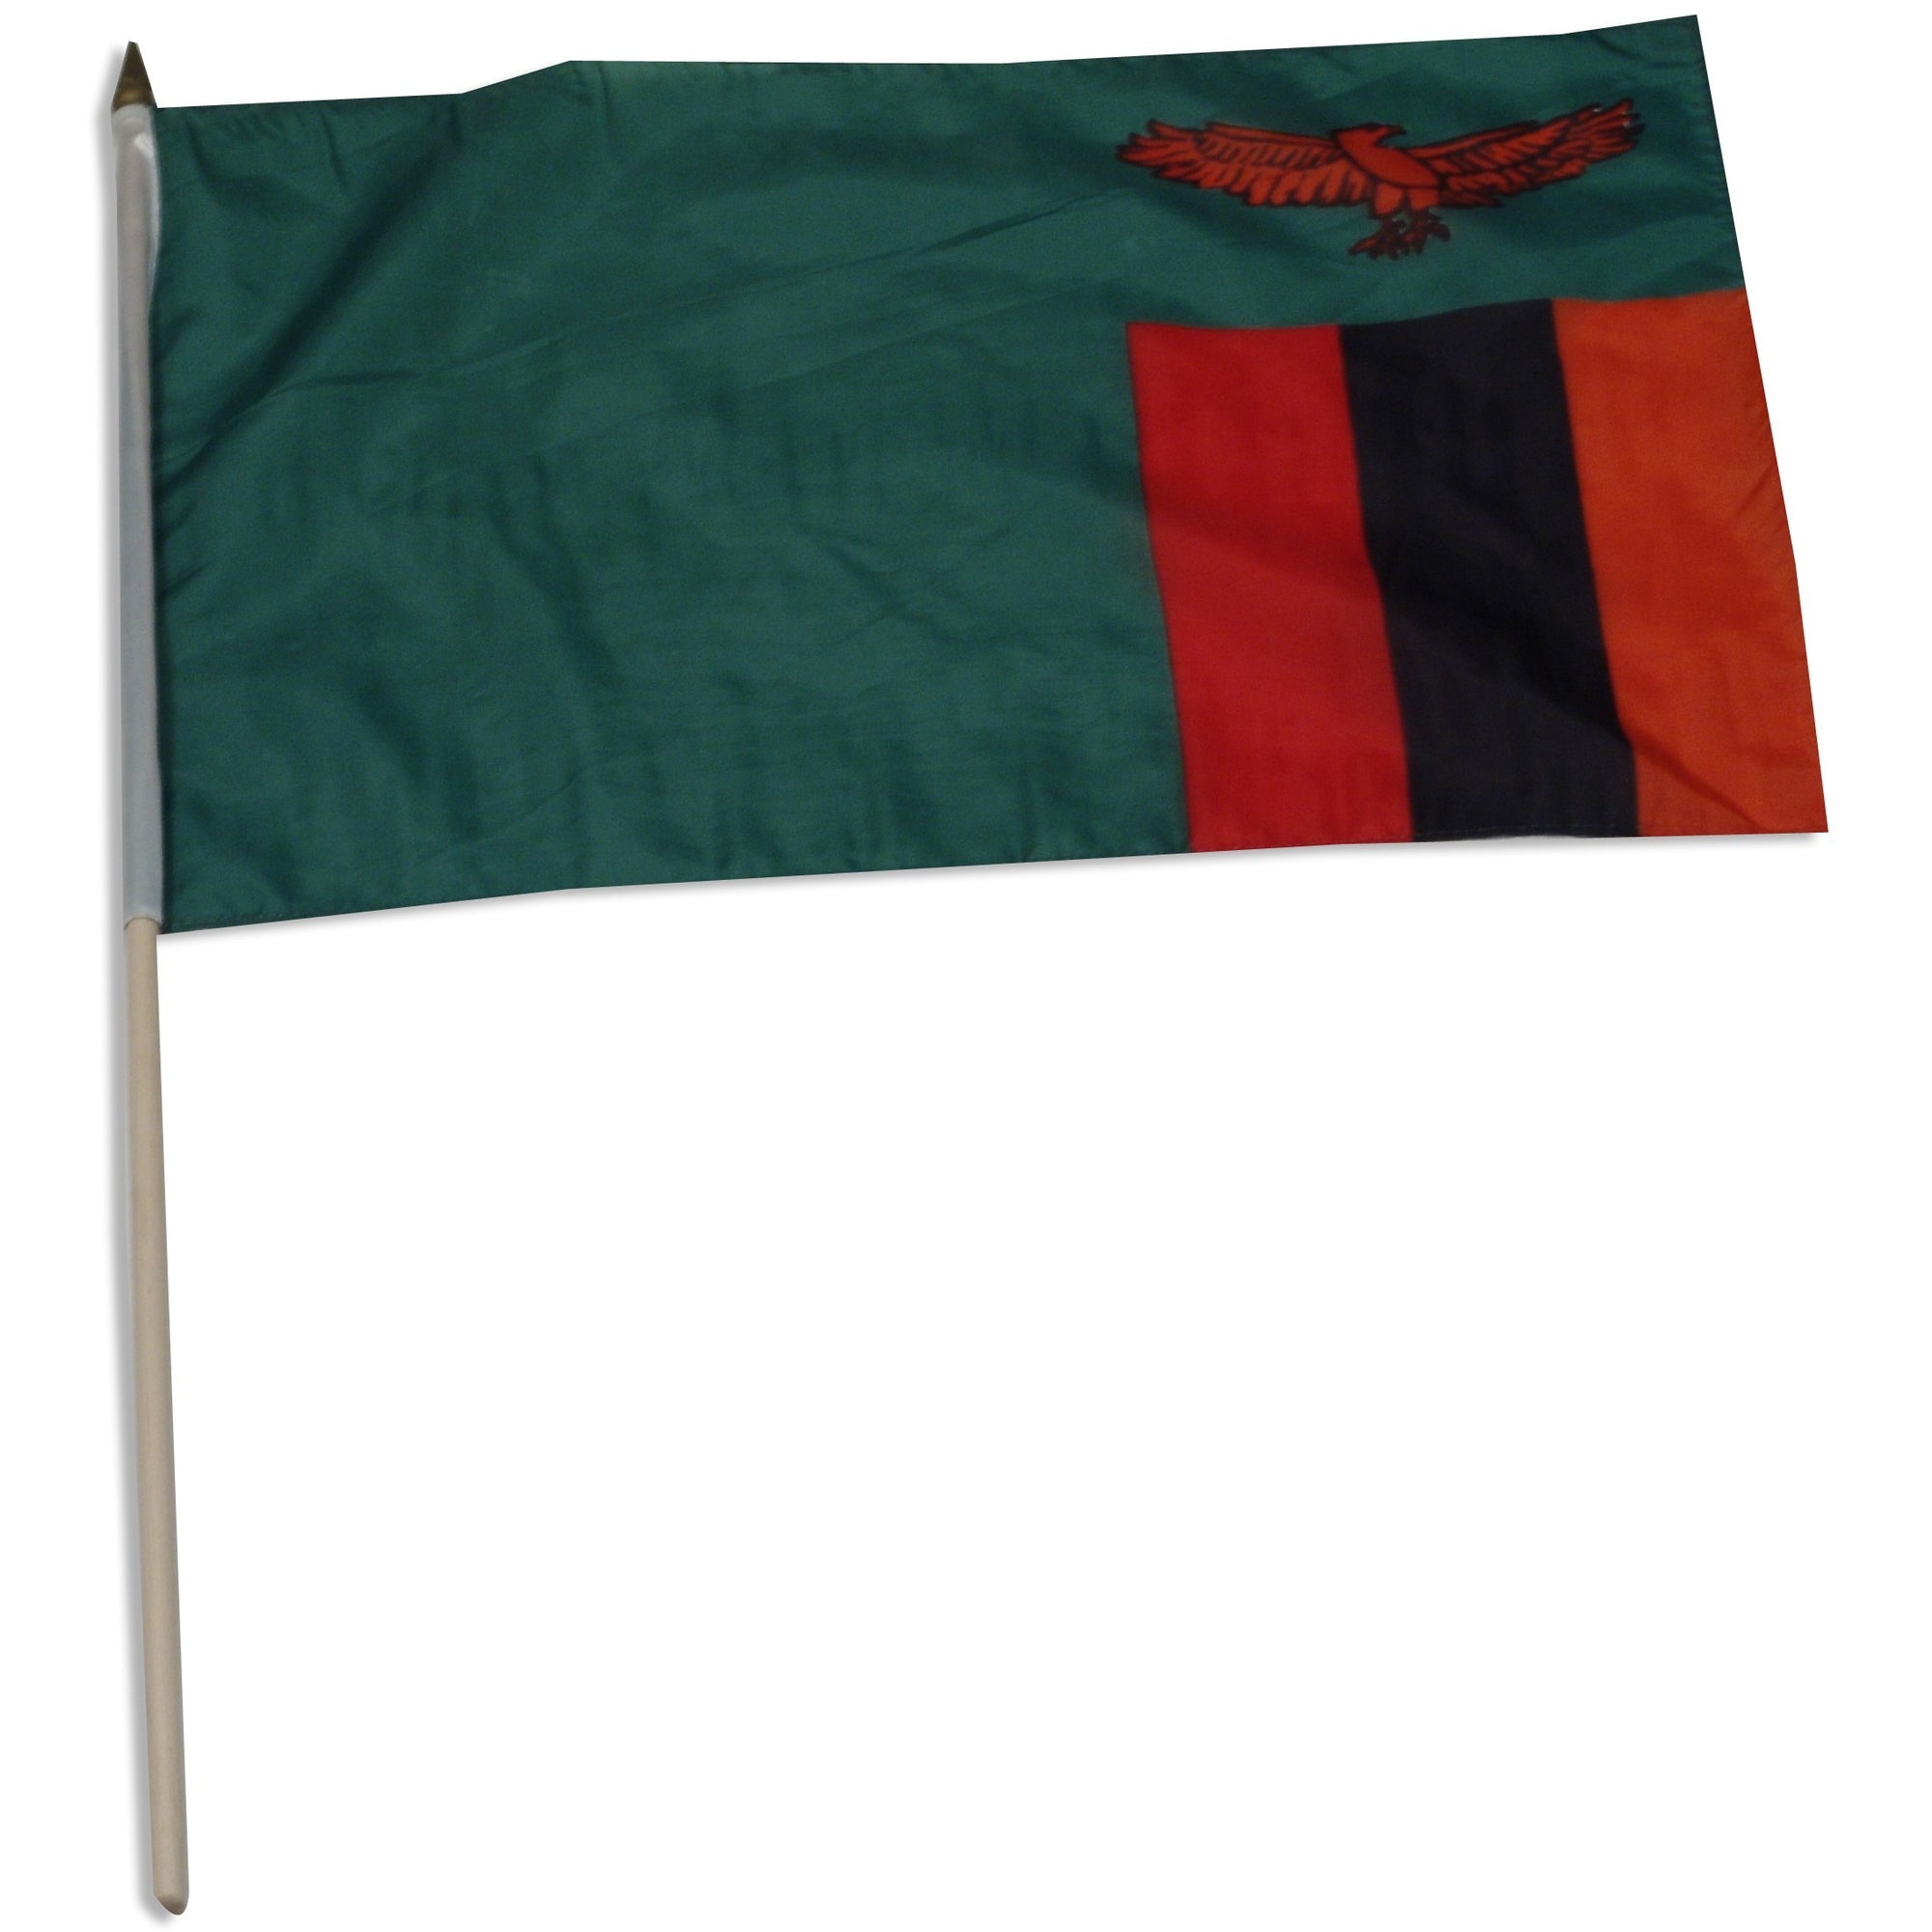 Zambia 12" x 18" Mounted Flag